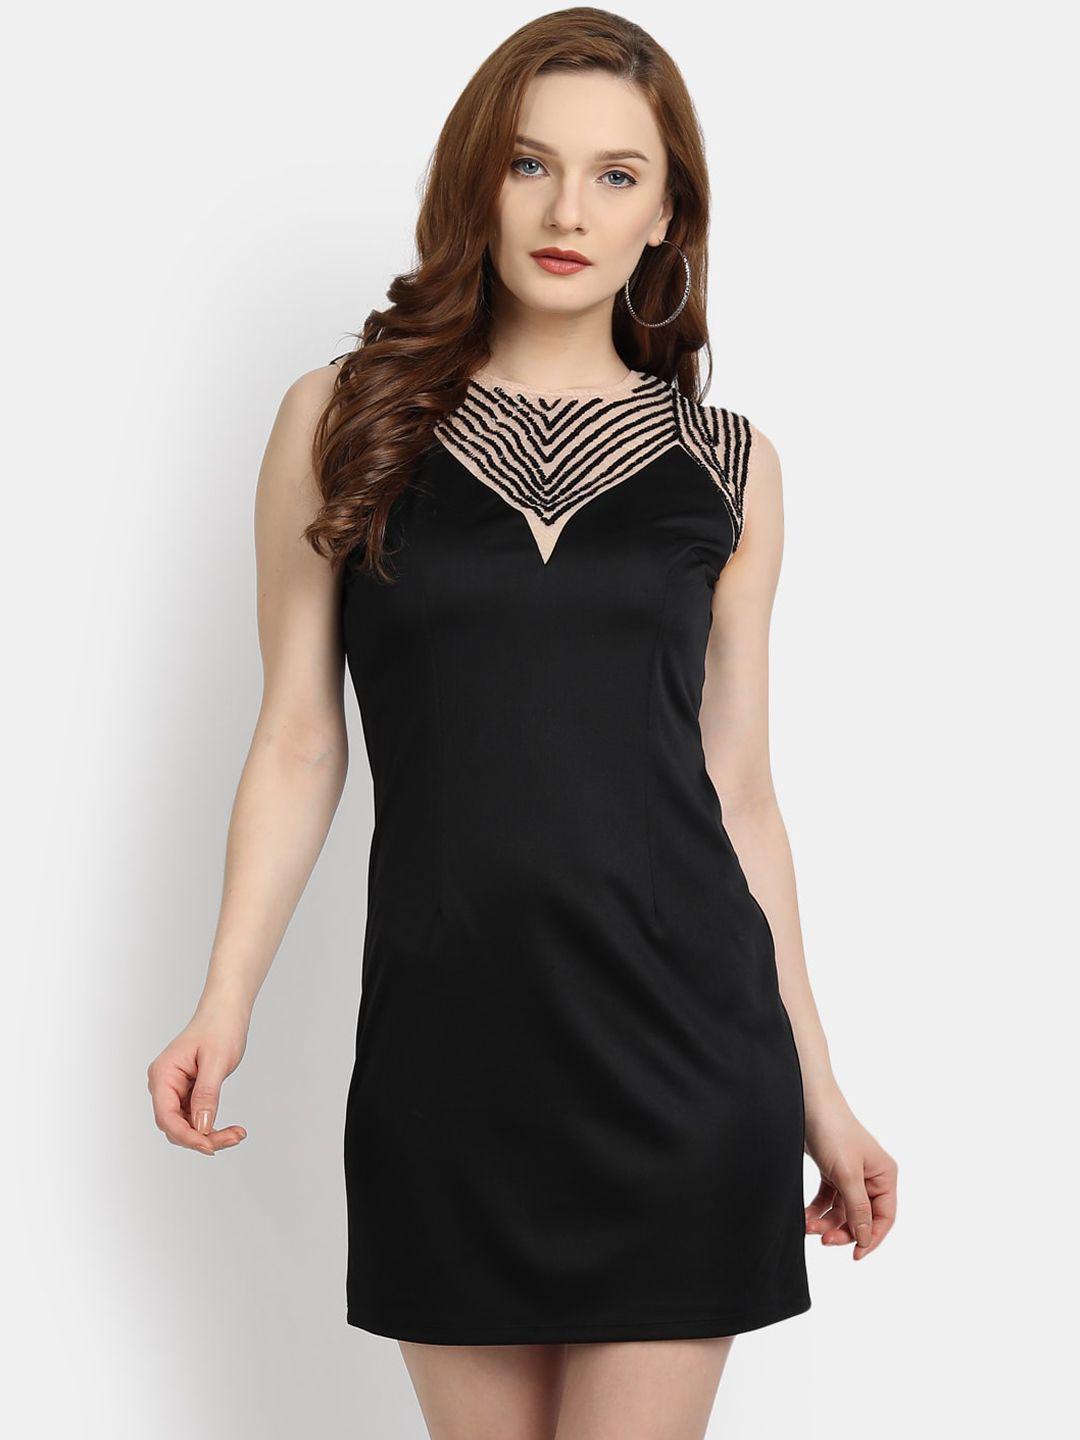 ly2-women-black-boat-neck-mini-dress